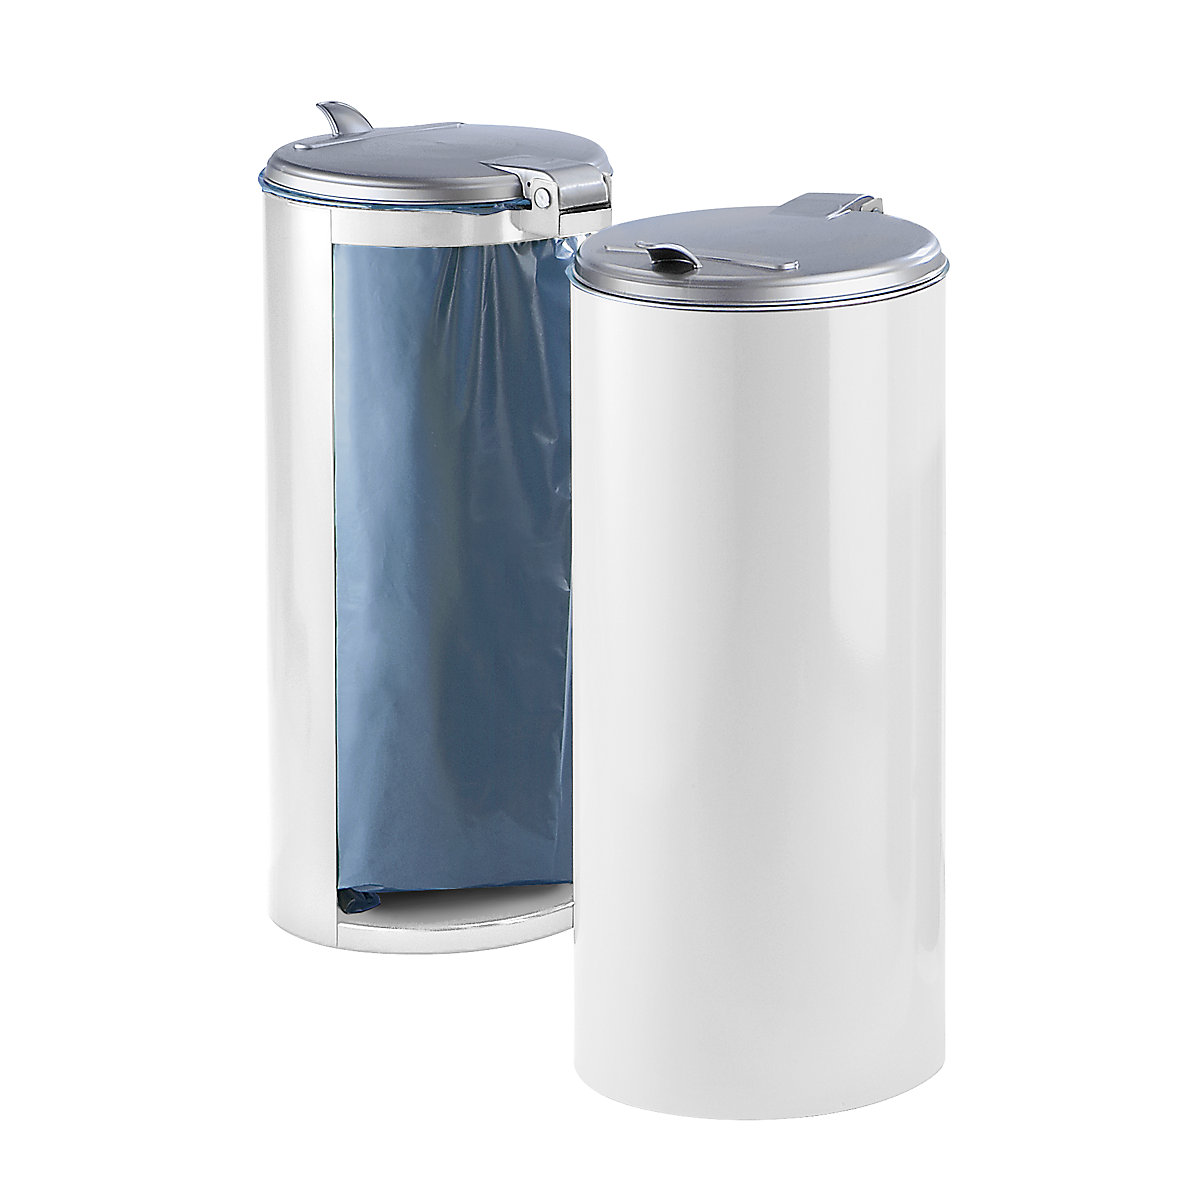 Plaatstalen afvalbak – VAR, voor inhoud 120 l, front gesloten, wit met zilverkleurig kunststof deksel-5